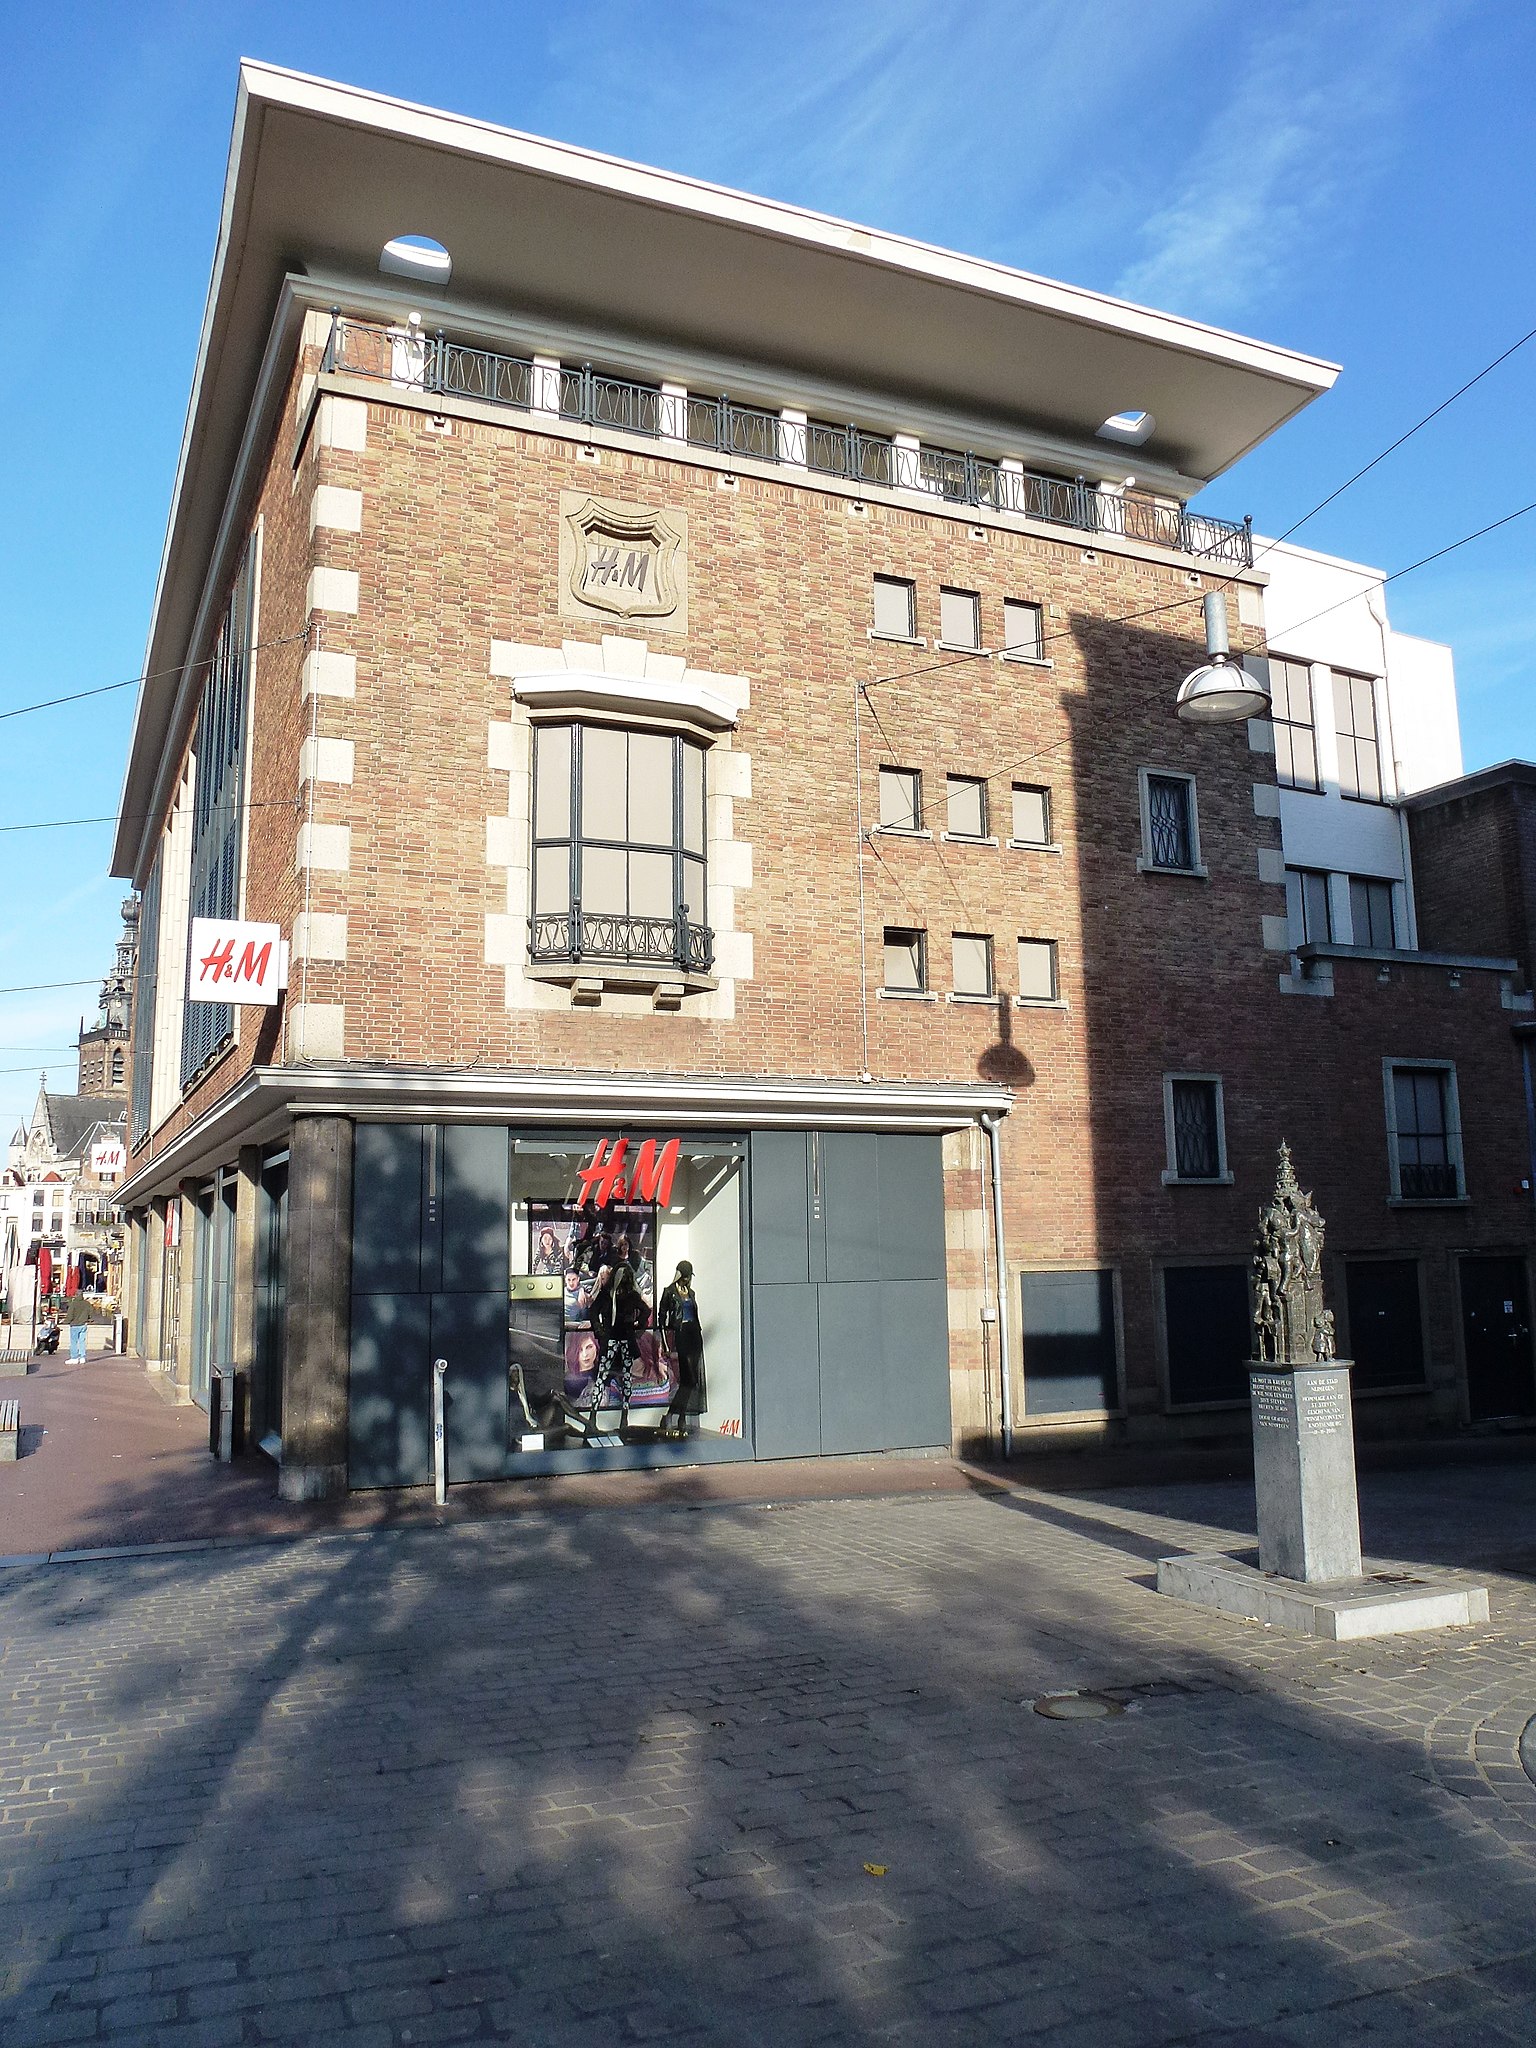 File:Nijmegen Winkelpand H&M Burchtstraat 1 zijgevel Gapershof 3.JPG -  Wikimedia Commons